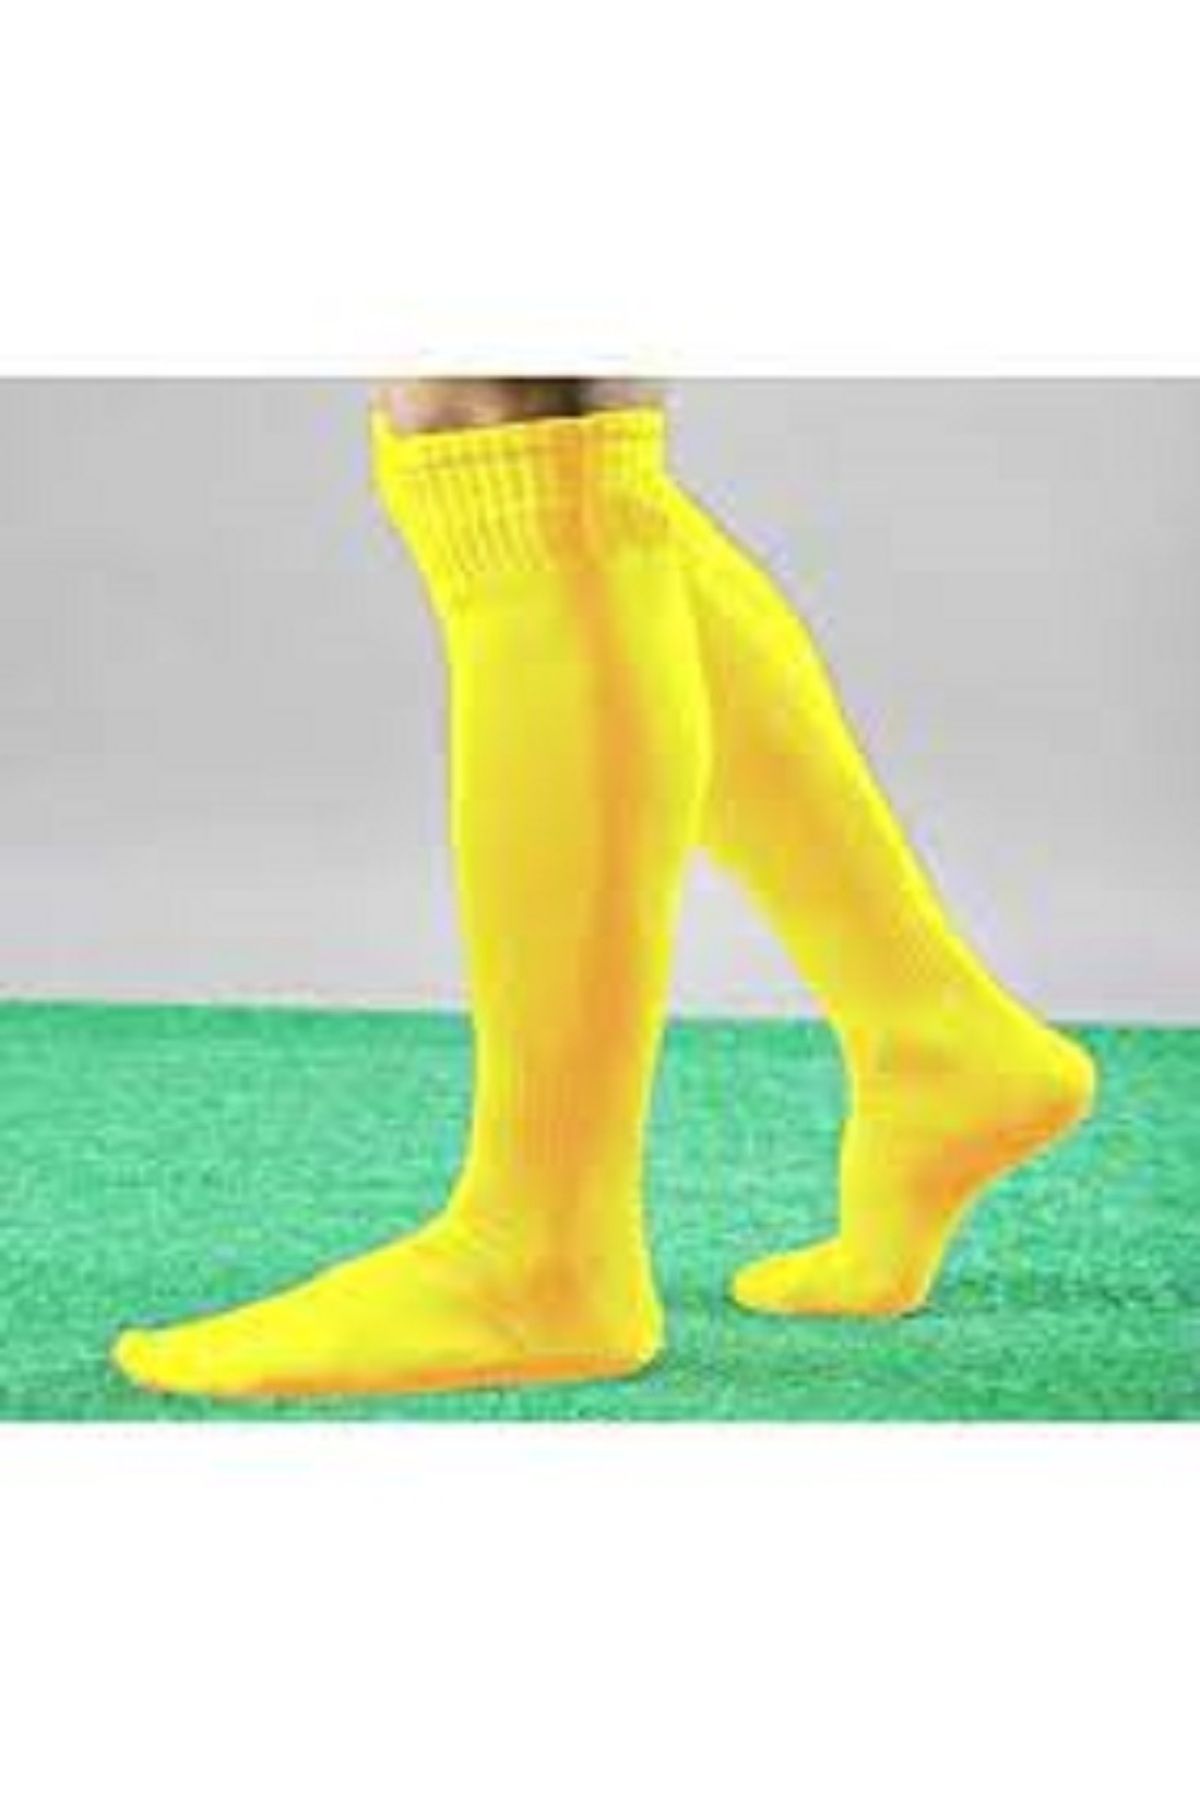 Sportlife 446 Marka Yetişkin Futbol Maç Çorabı 40-45 Tozluk, Konç, Halı Saha Çorabı